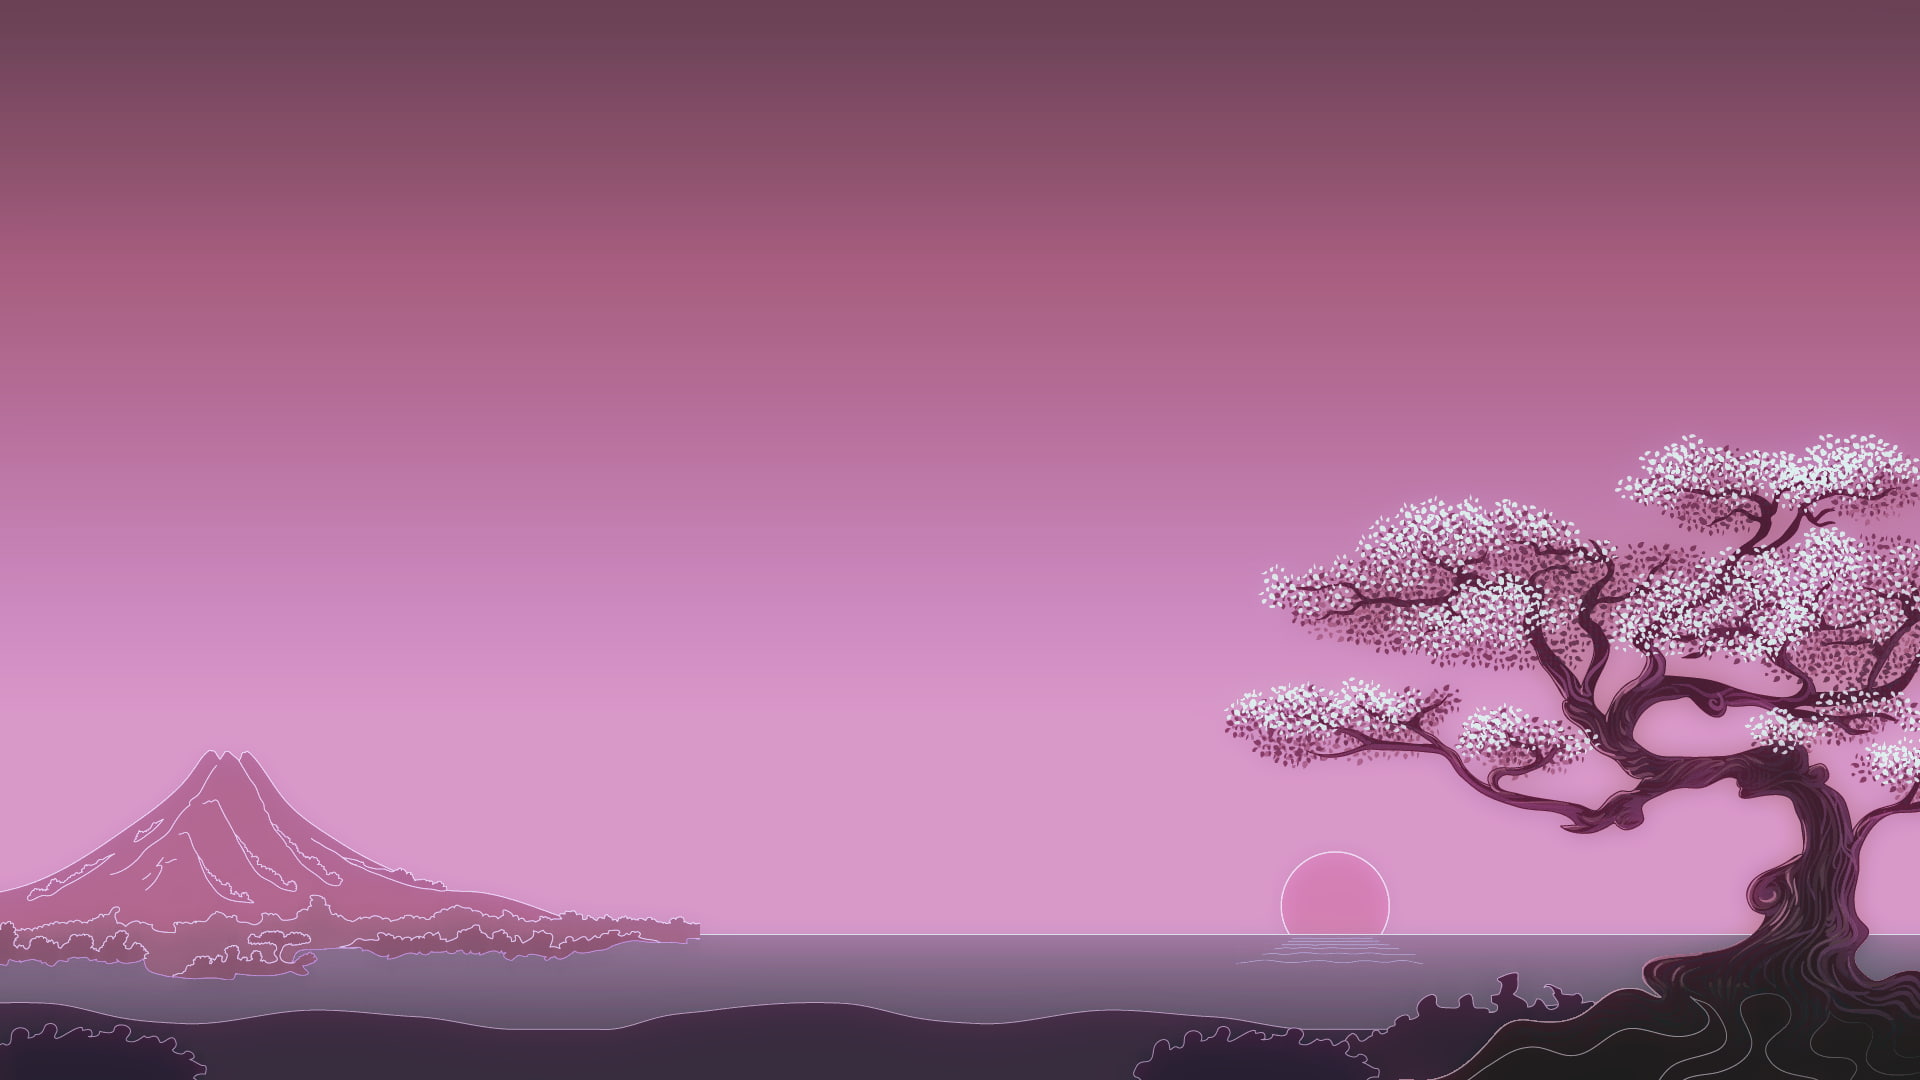 flowering tree illustration, minimalism, digital art, trees, Sun